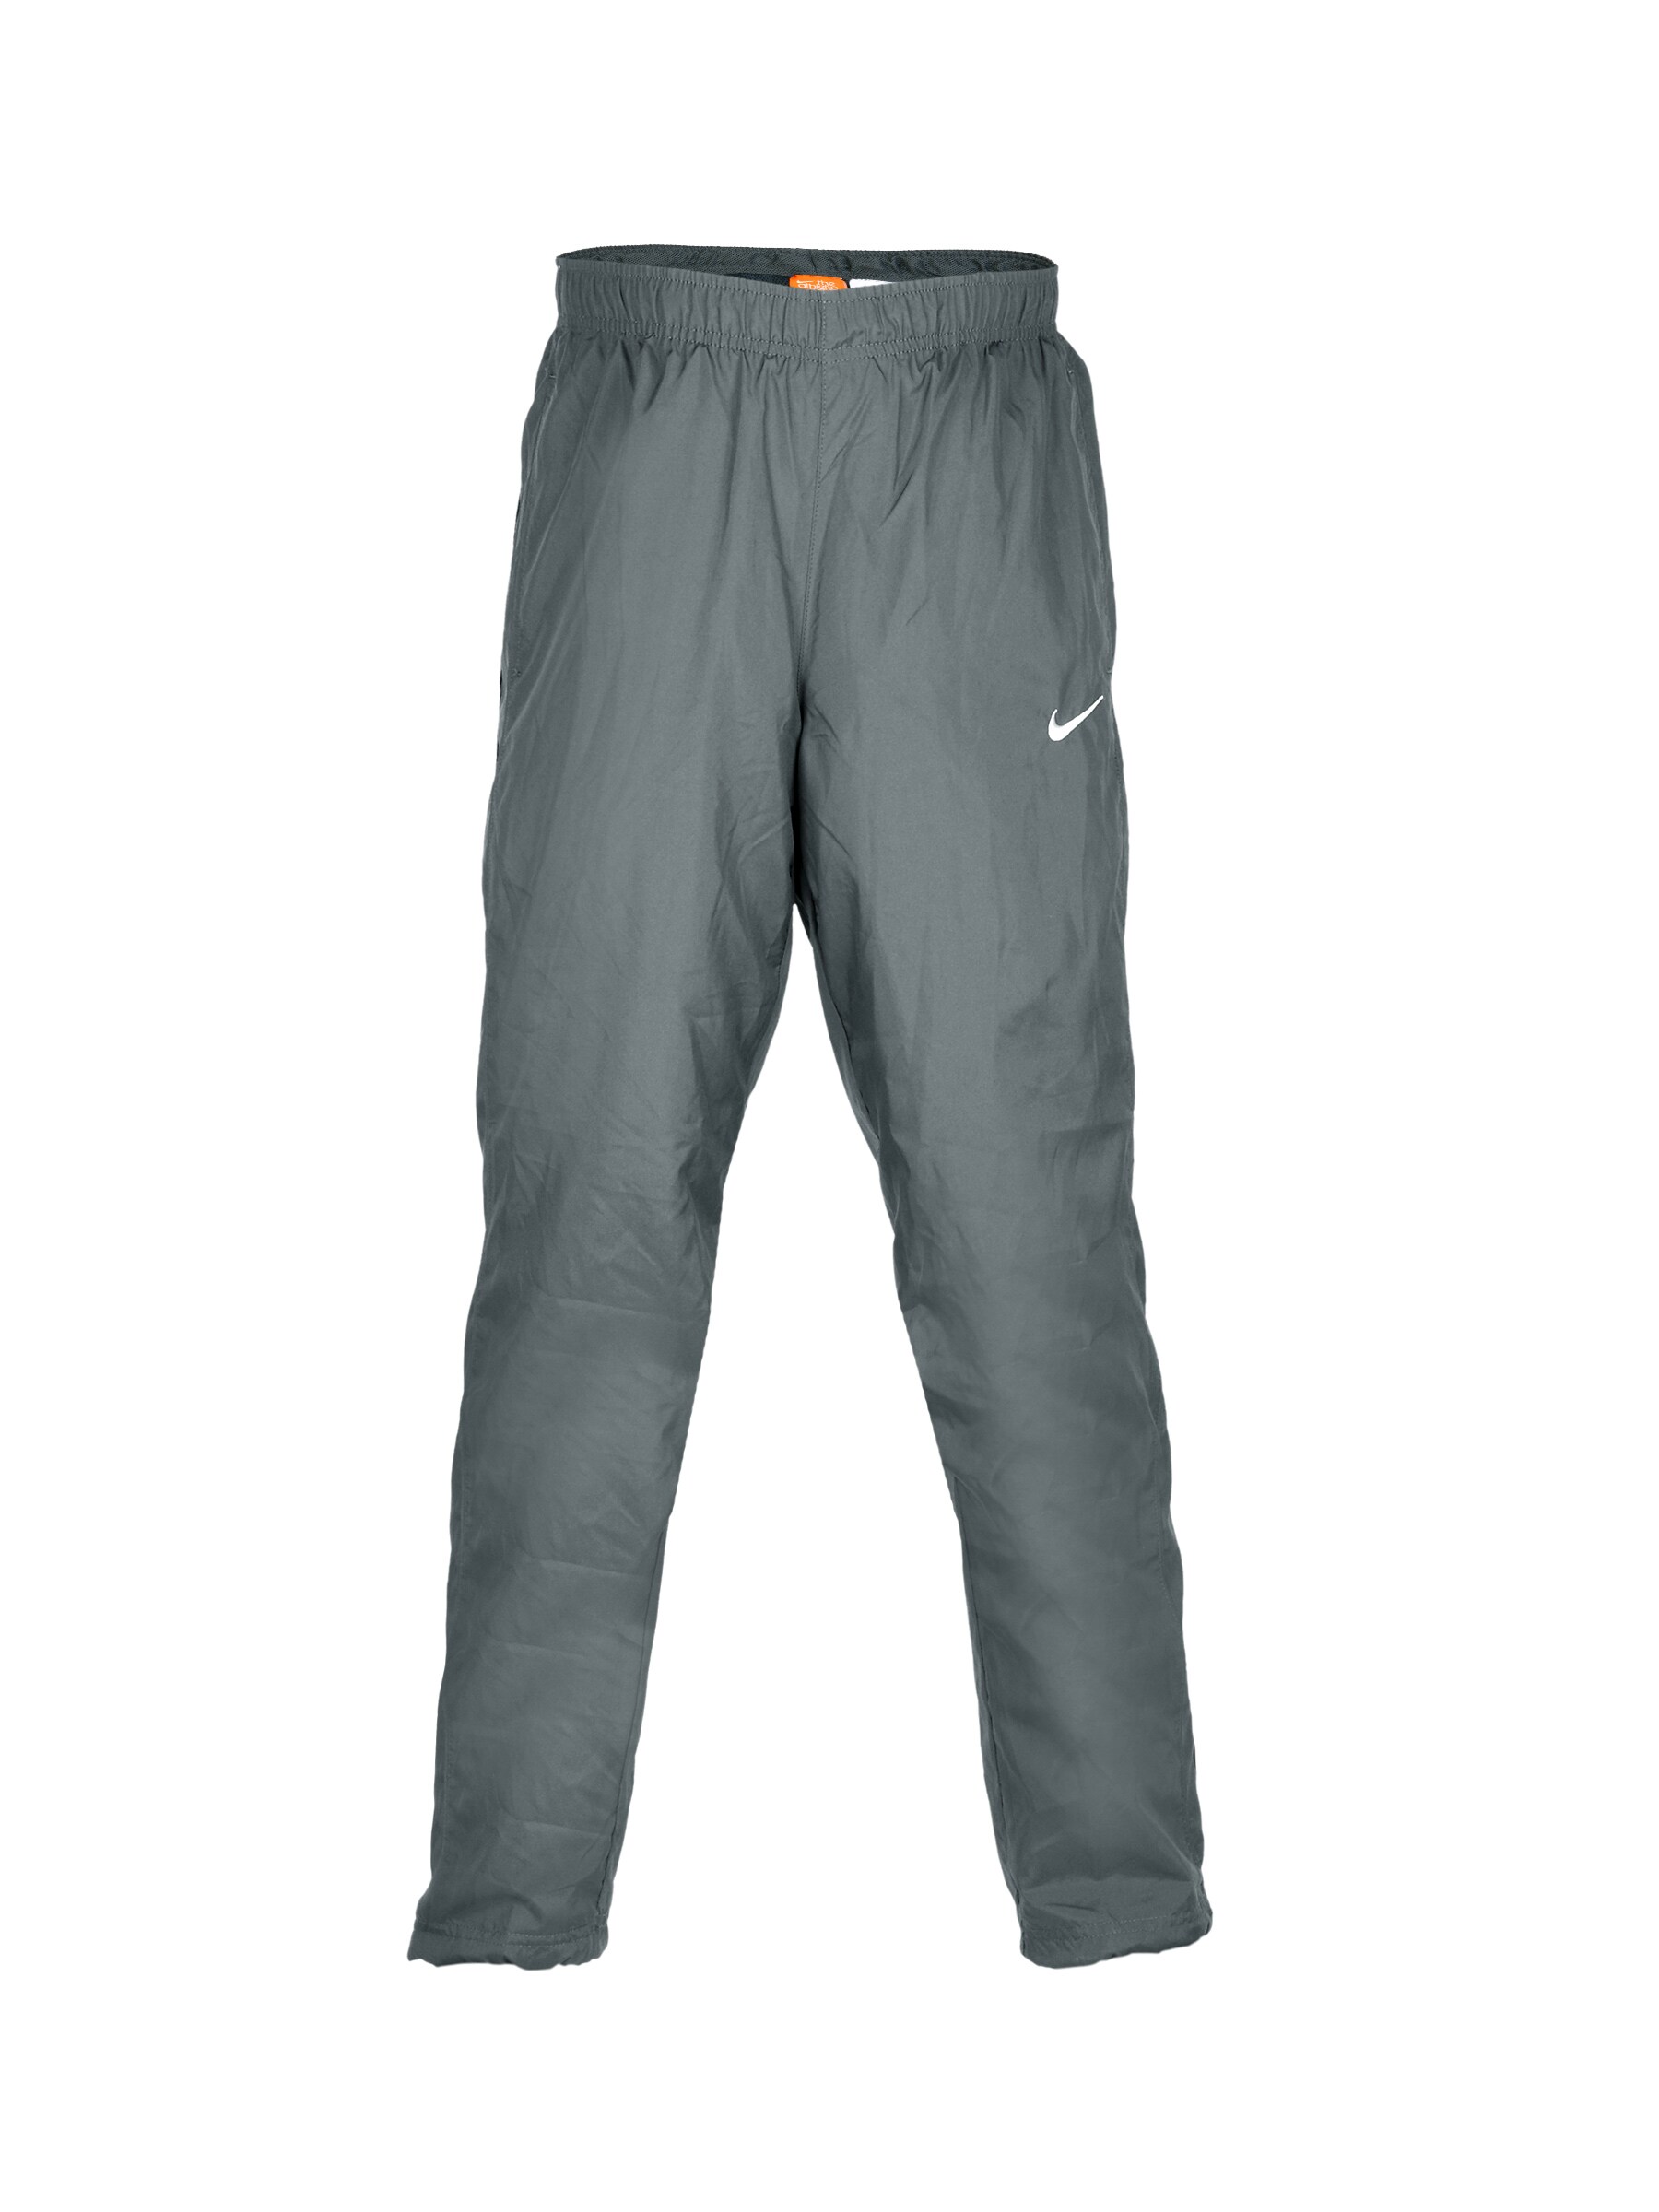 Nike Men Breakline Grey Track Pants